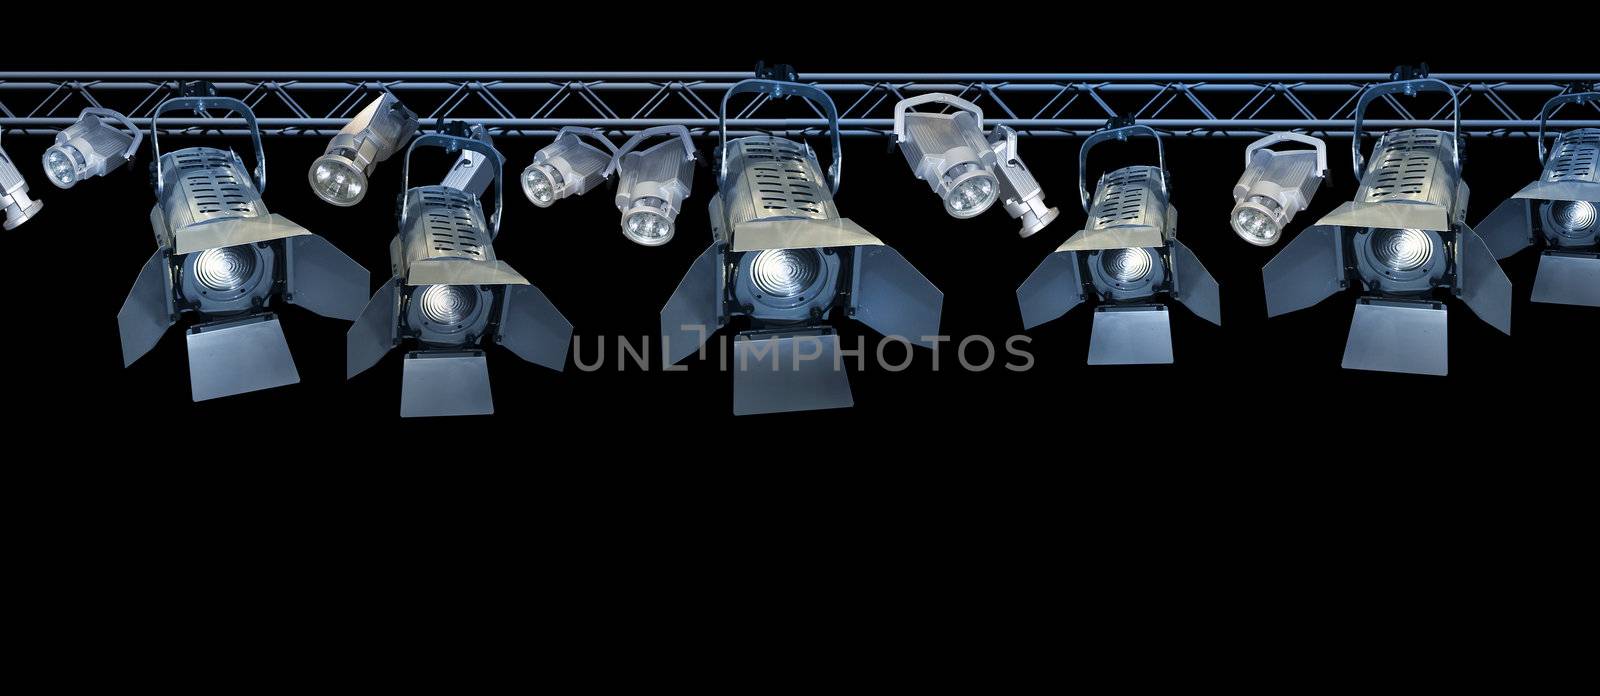 Stage spotlight rack by anterovium